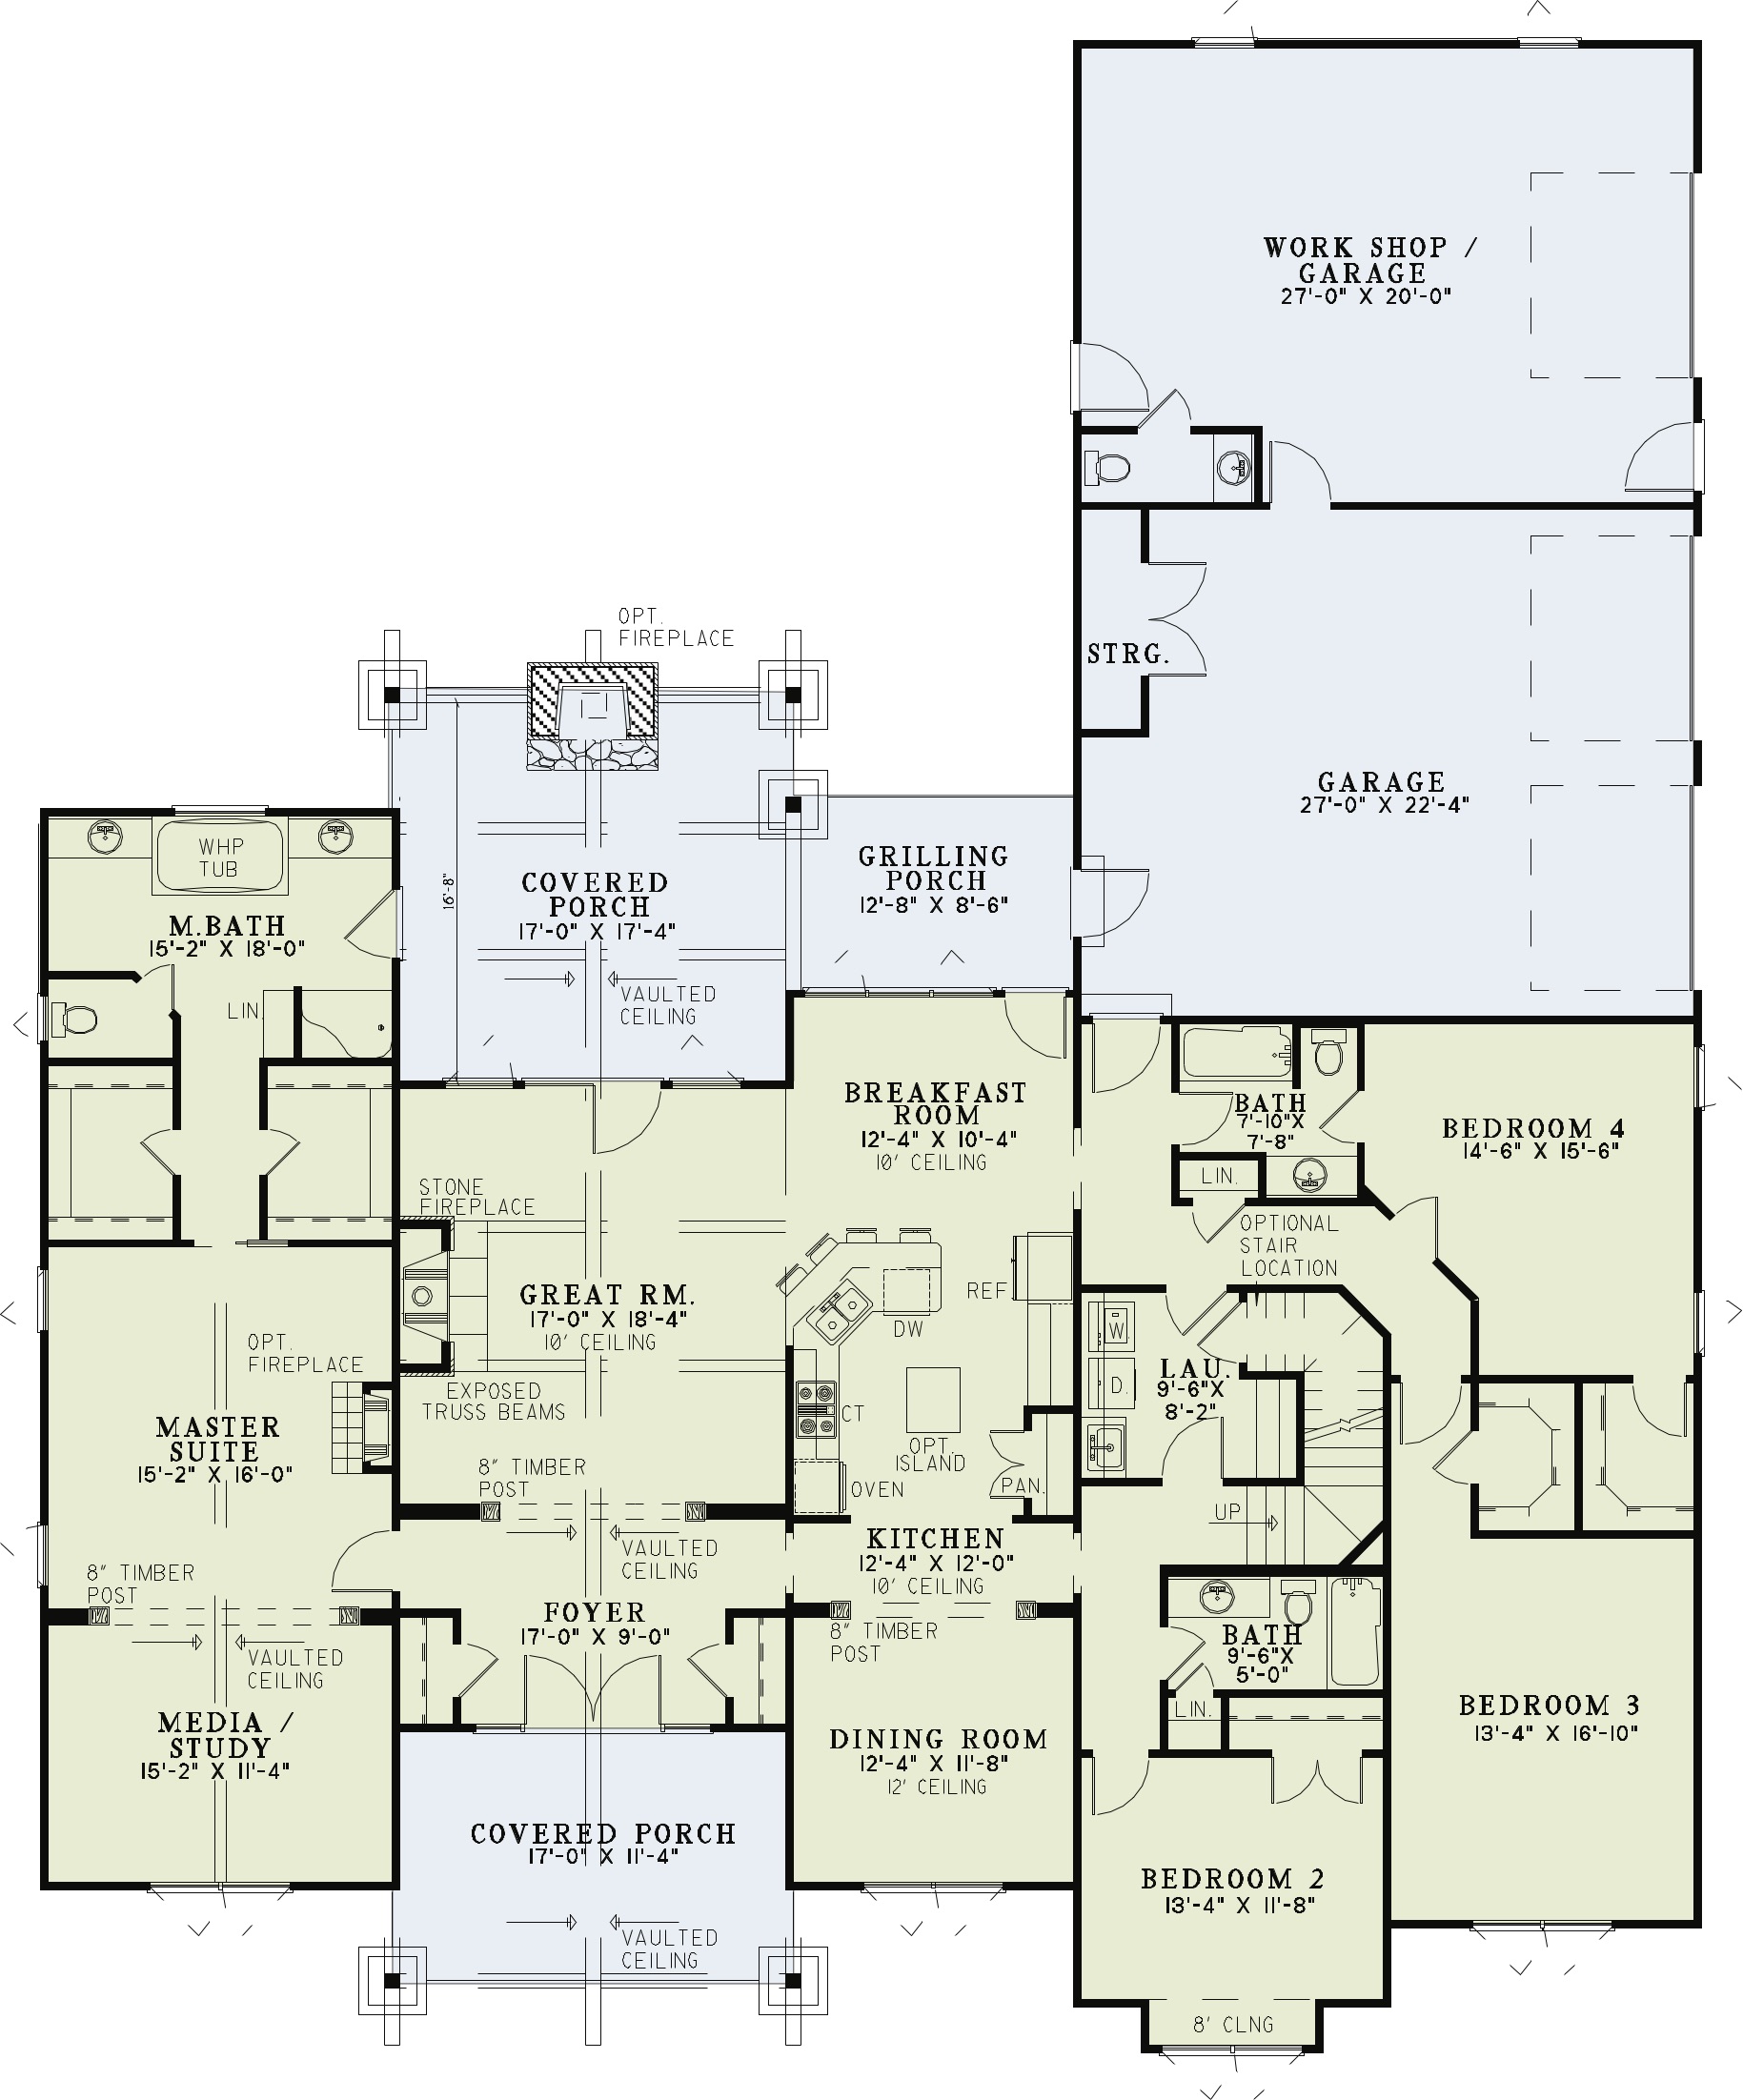 House Plan NDG 1267